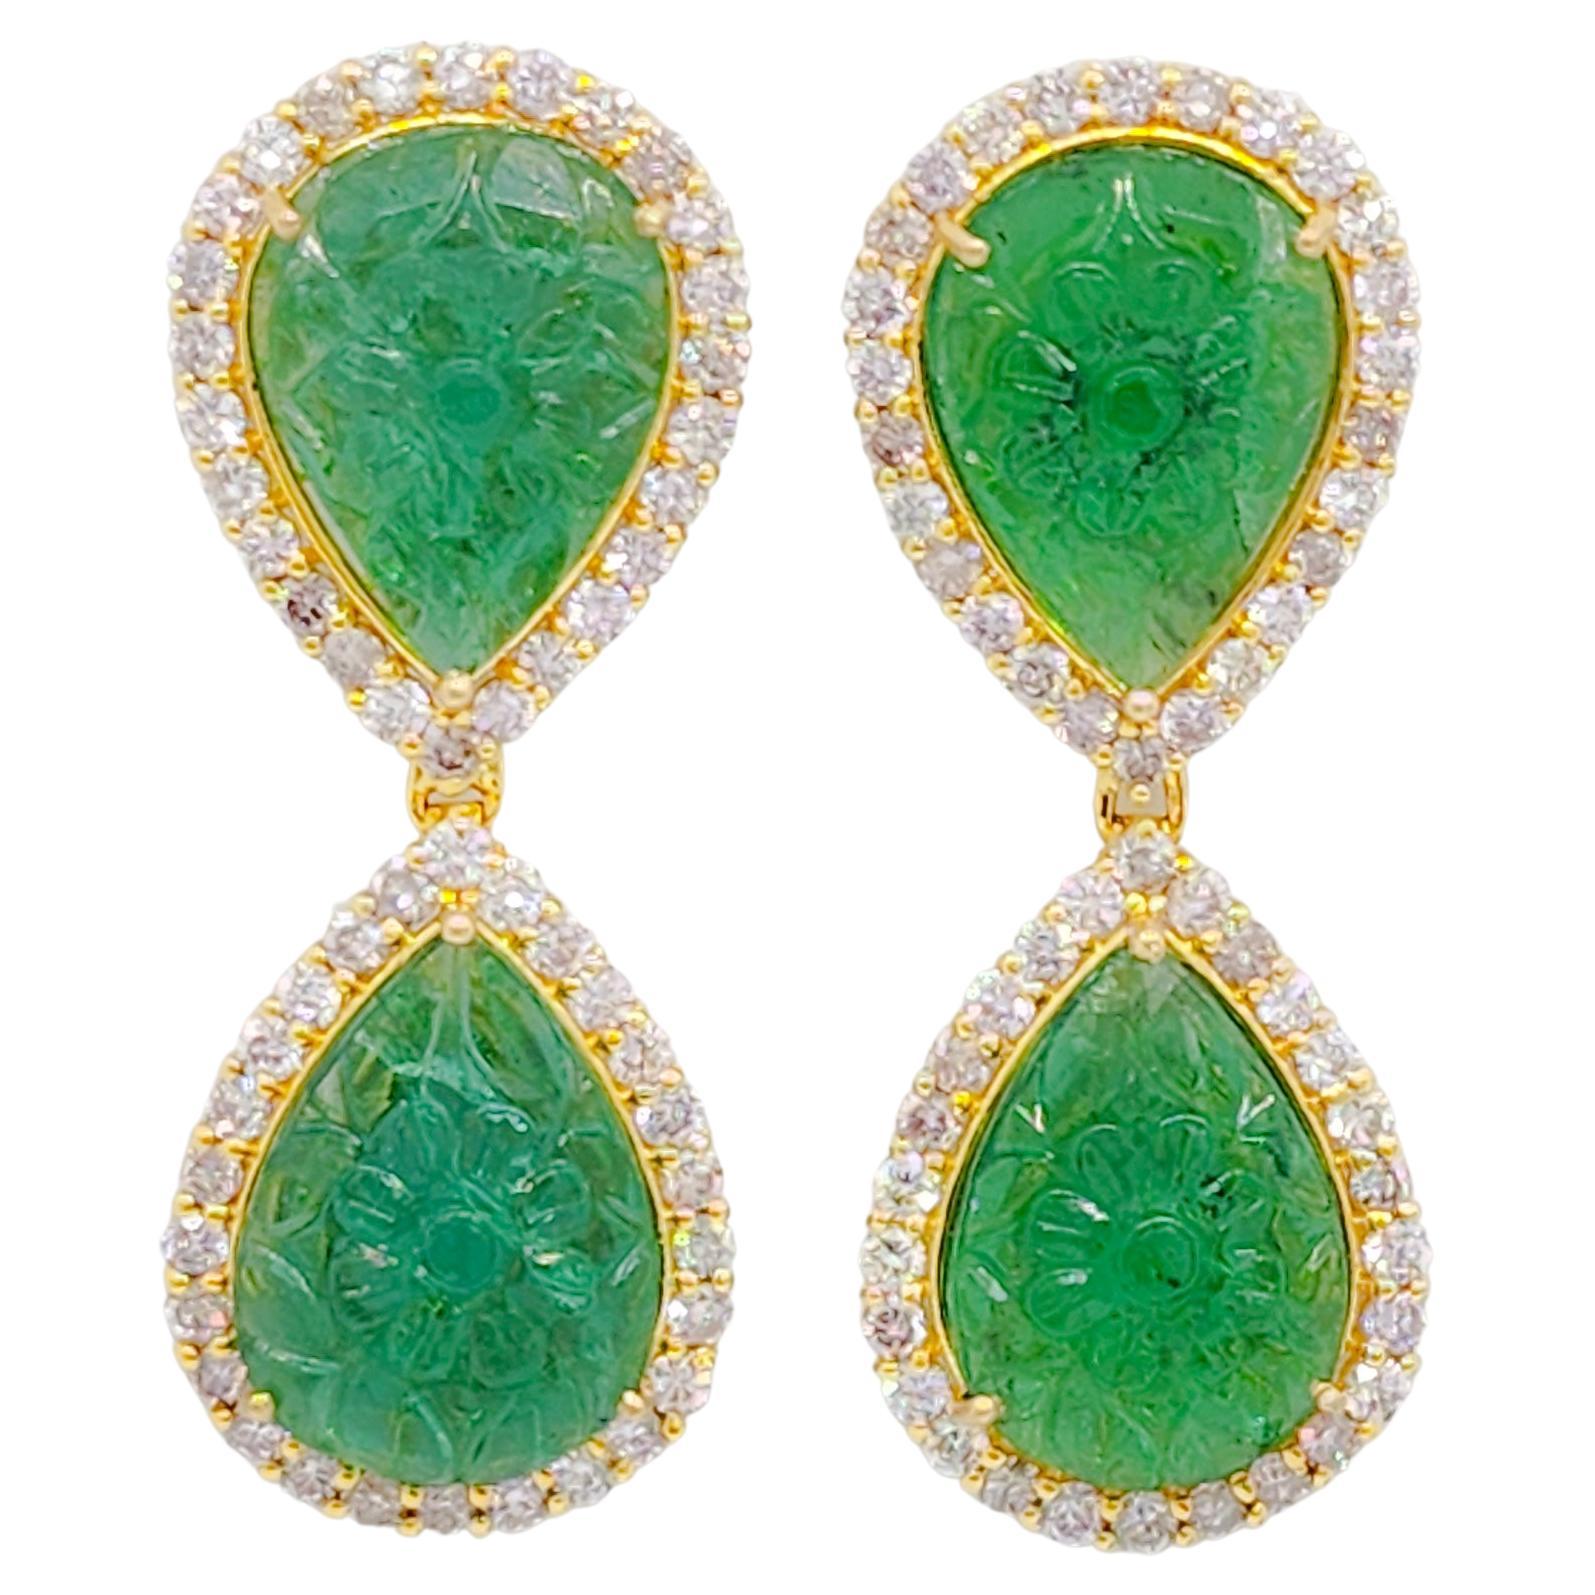 Geschnitzte Smaragd- und weiße Diamant-Ohrringe aus 18 Karat Gelbgold